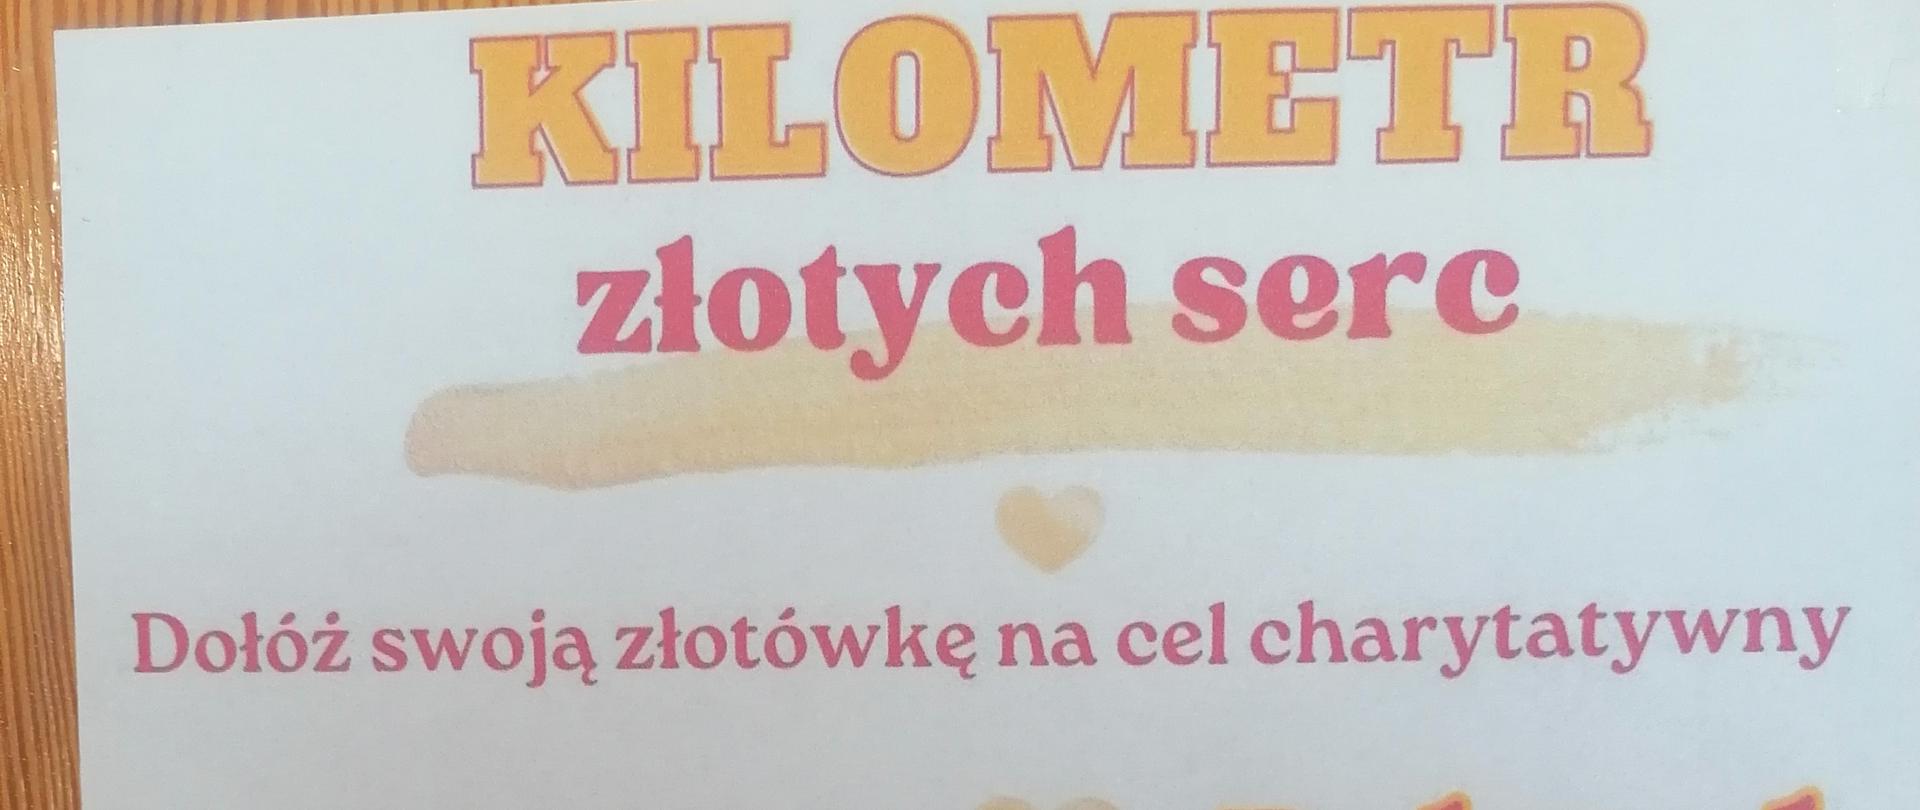 kilometr_złotych_serc